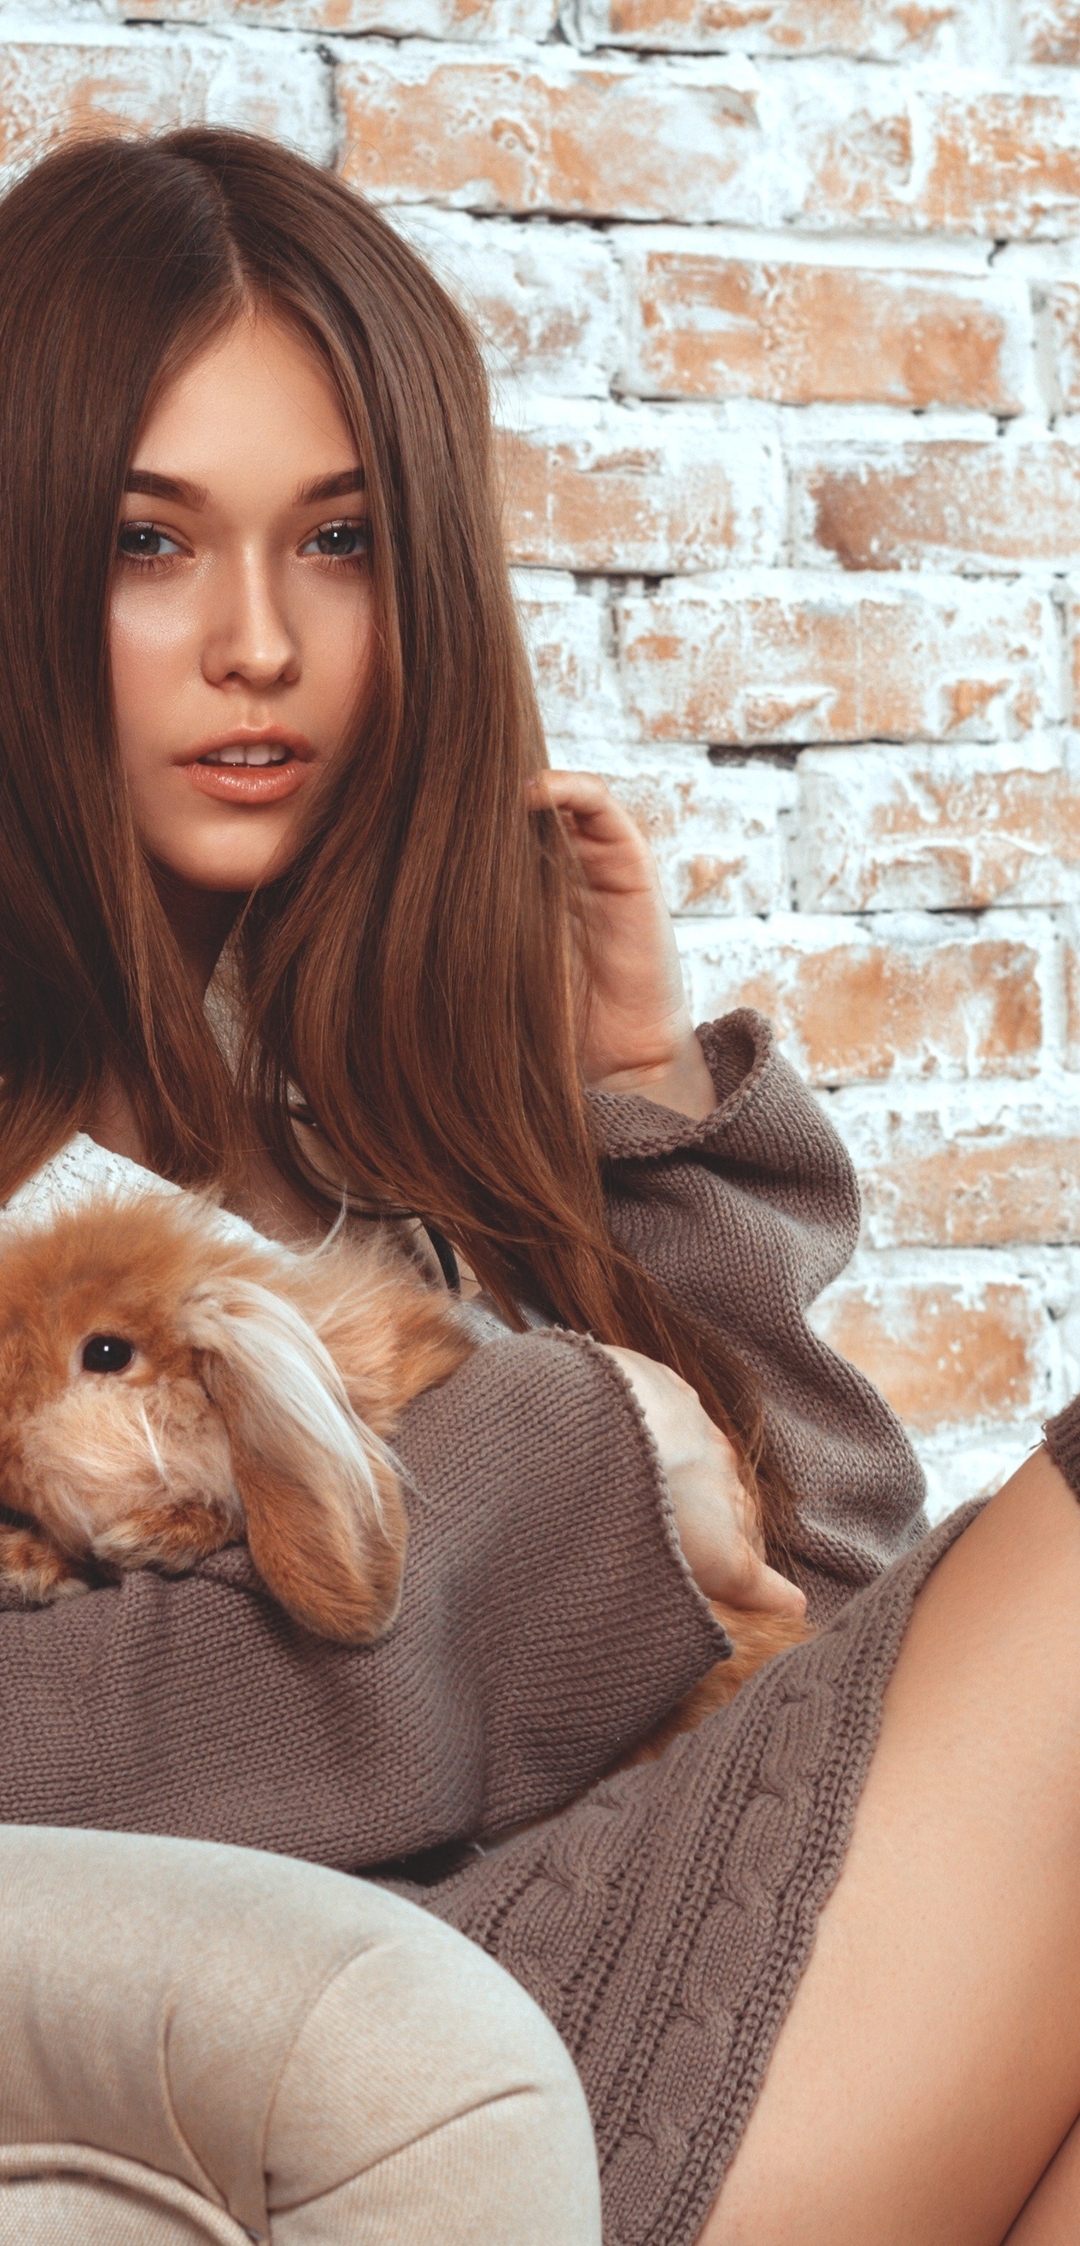 Картинка: Брюнетка, девушка, длинные волосы, кролик, сидит, кресло, кирпичная стена